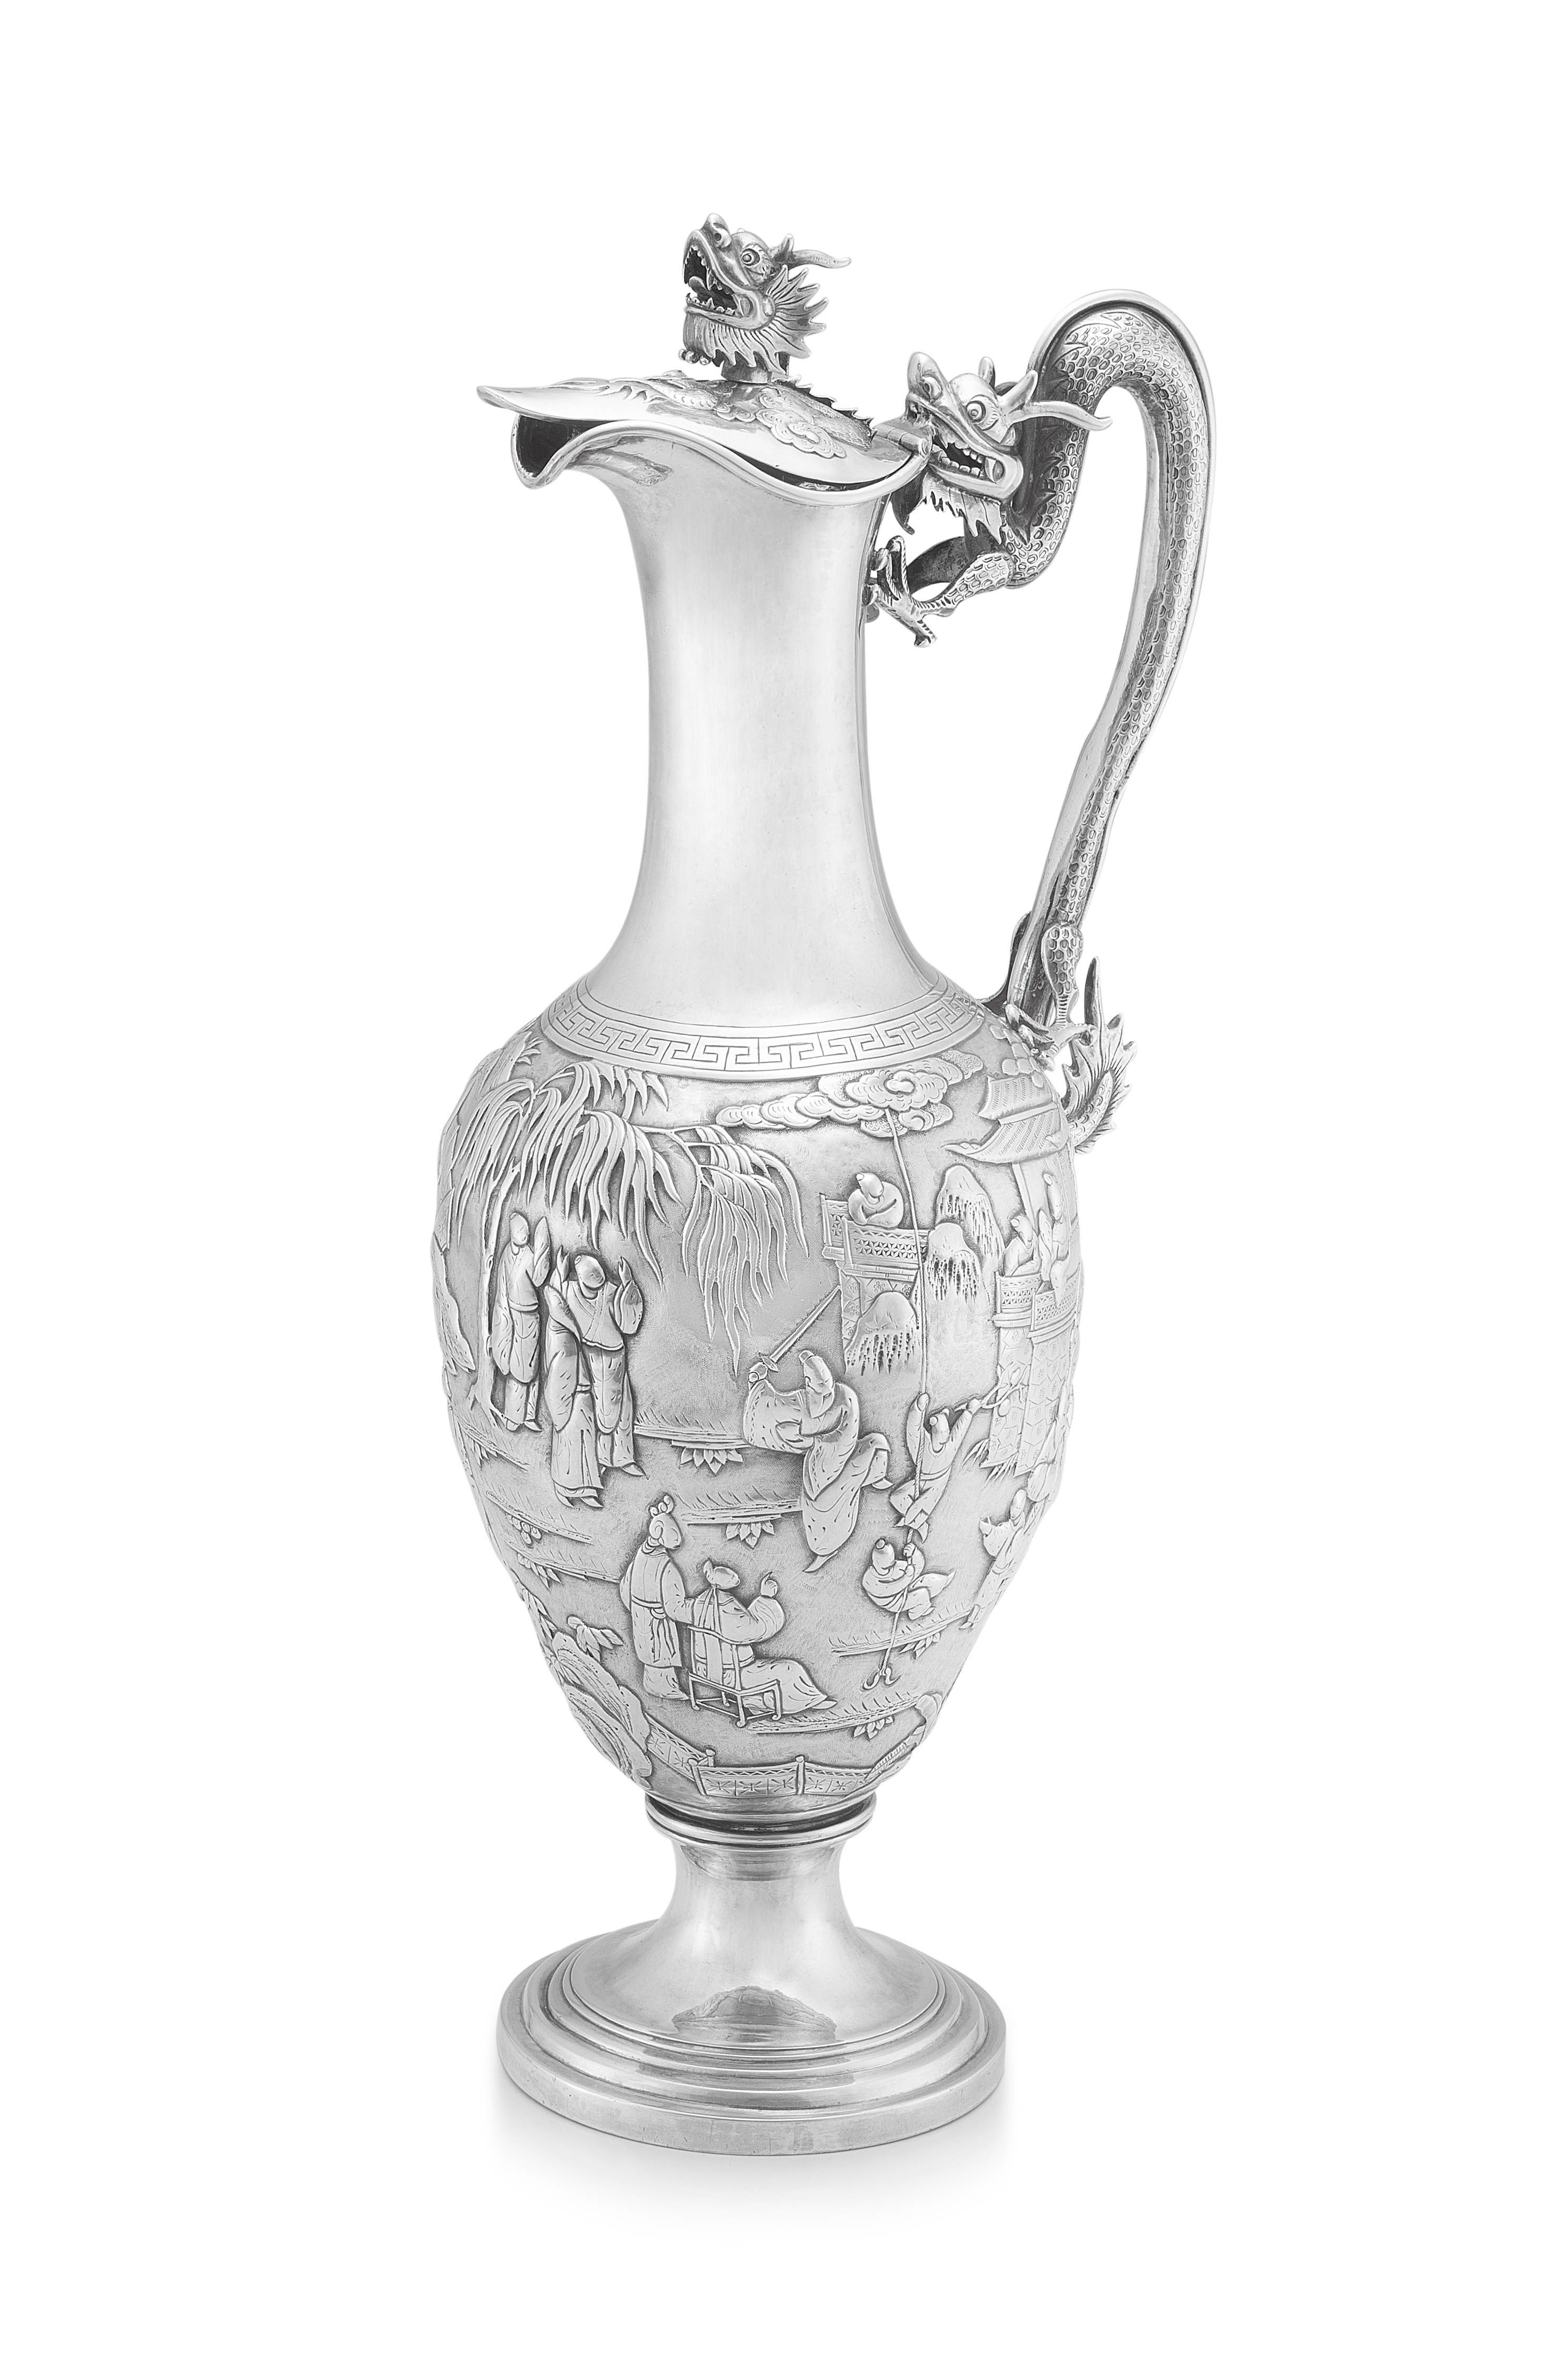 A Chinese Export silver claret jug, Wang Hing, 1854-1941